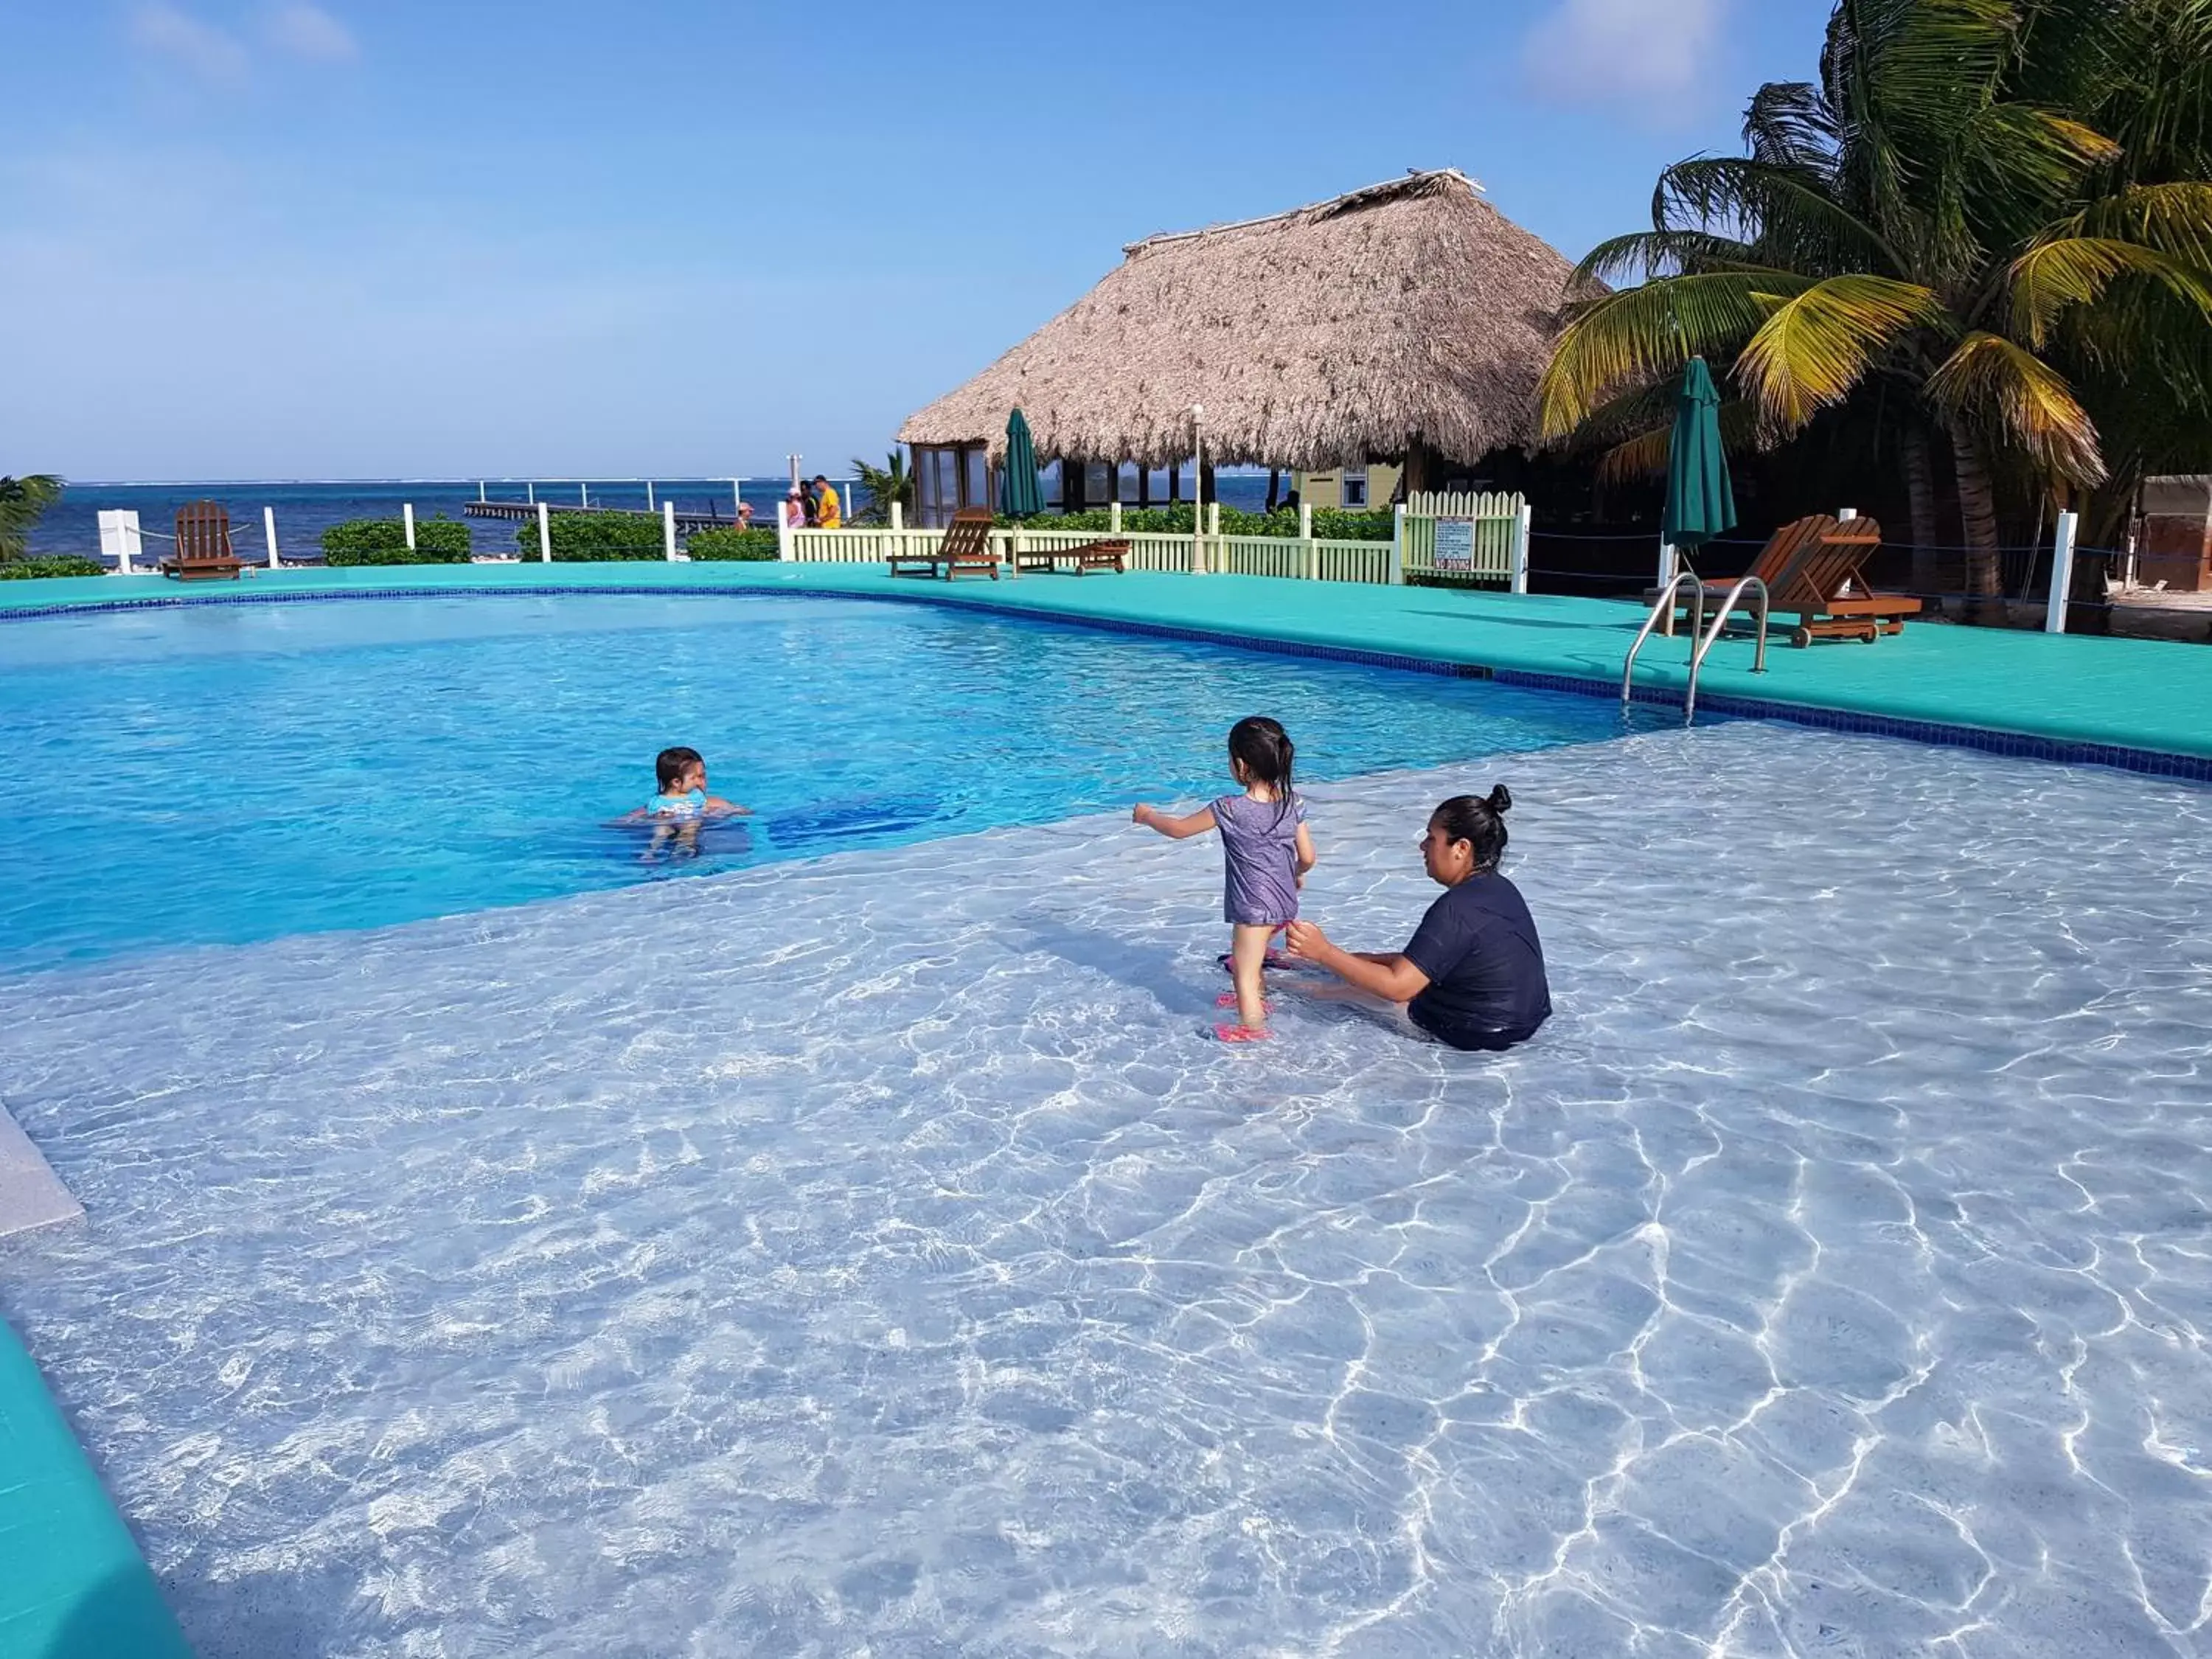 Pool view, Swimming Pool in Royal Caribbean Resort